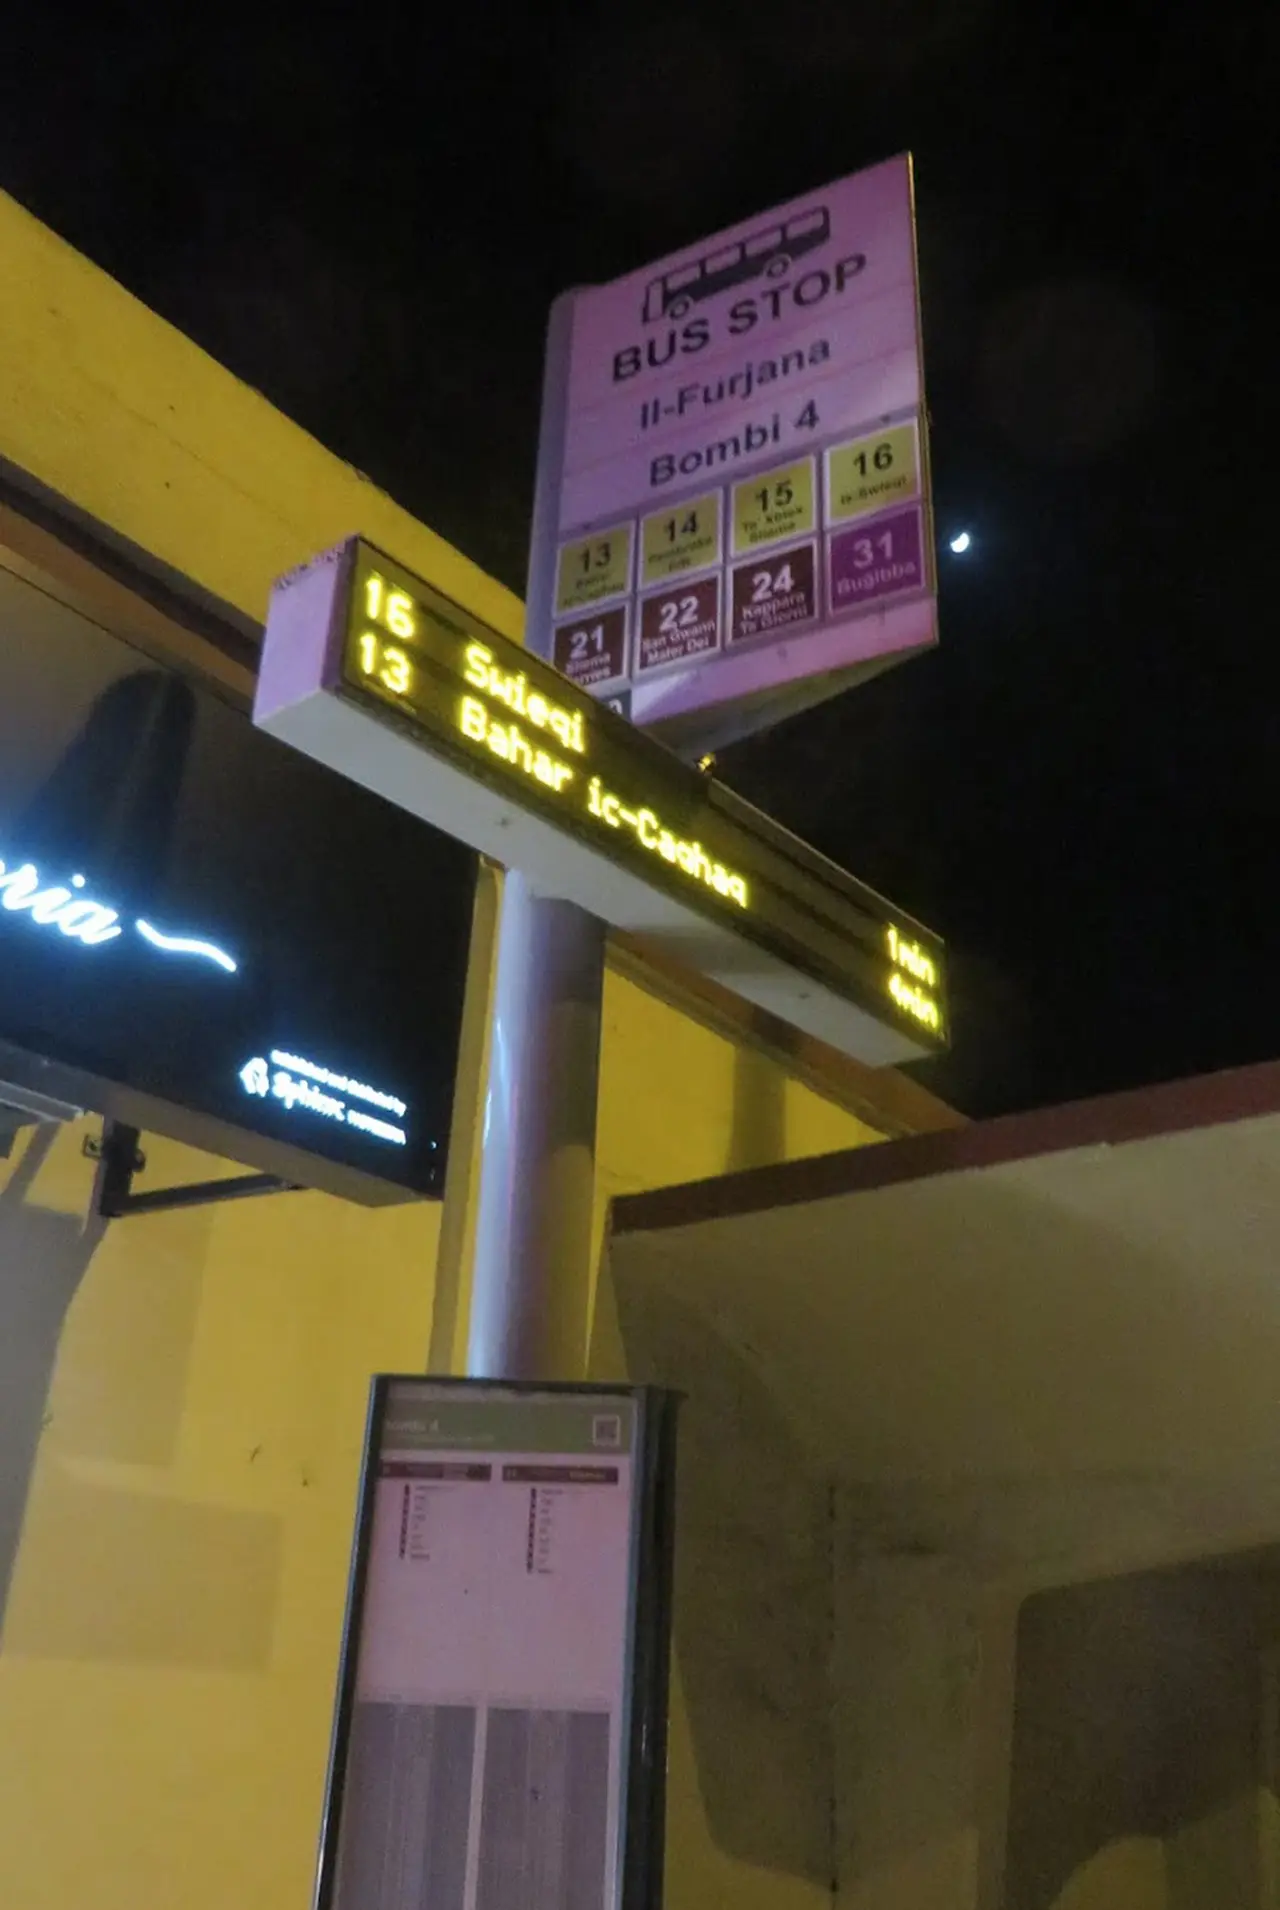 英語表示でわかりやすいバス停。ルートはグーグルで調べていきました